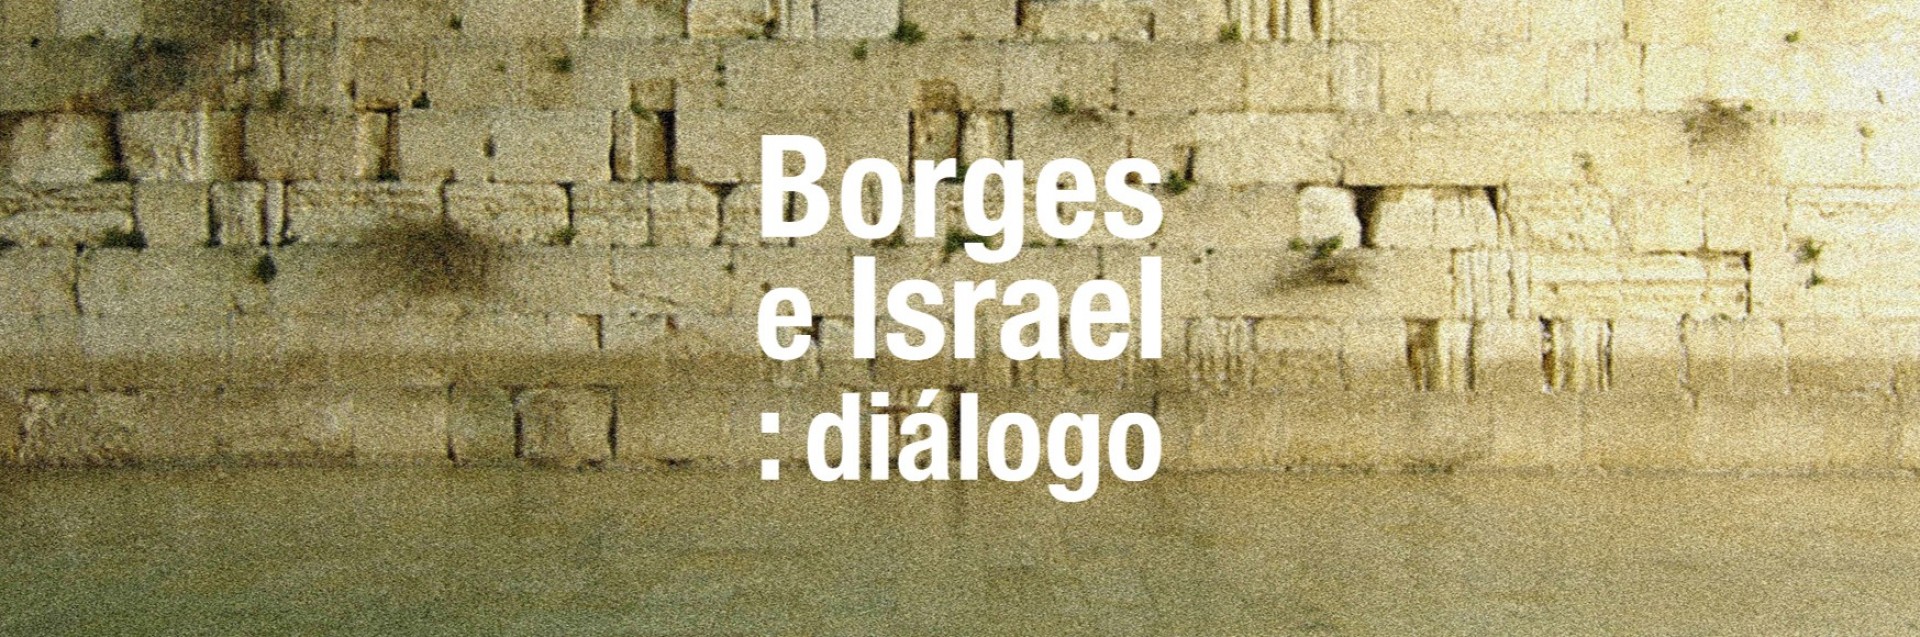 Borges e Israel: diálogo - Biblioteca Nacional